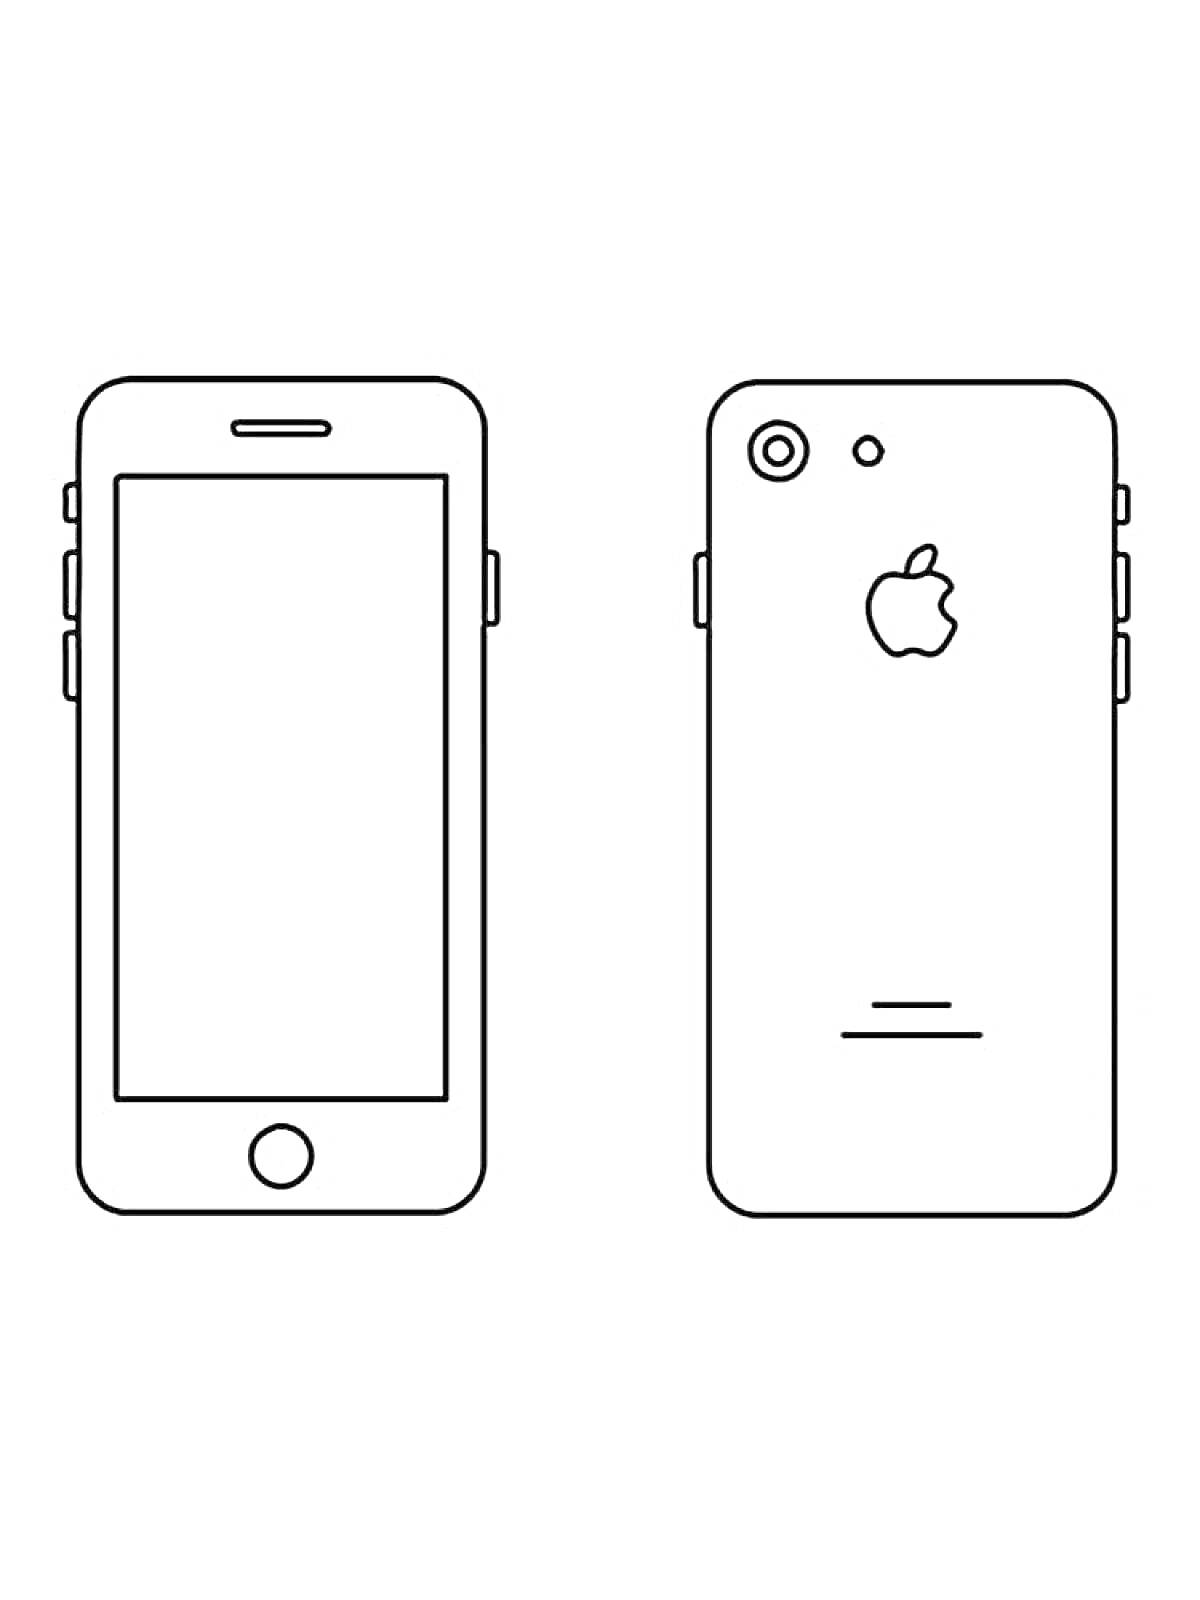 Раскраска Раскраска iPhone 14 с передней и задней панелью, кнопками управления, логотипом яблока и линзами камеры